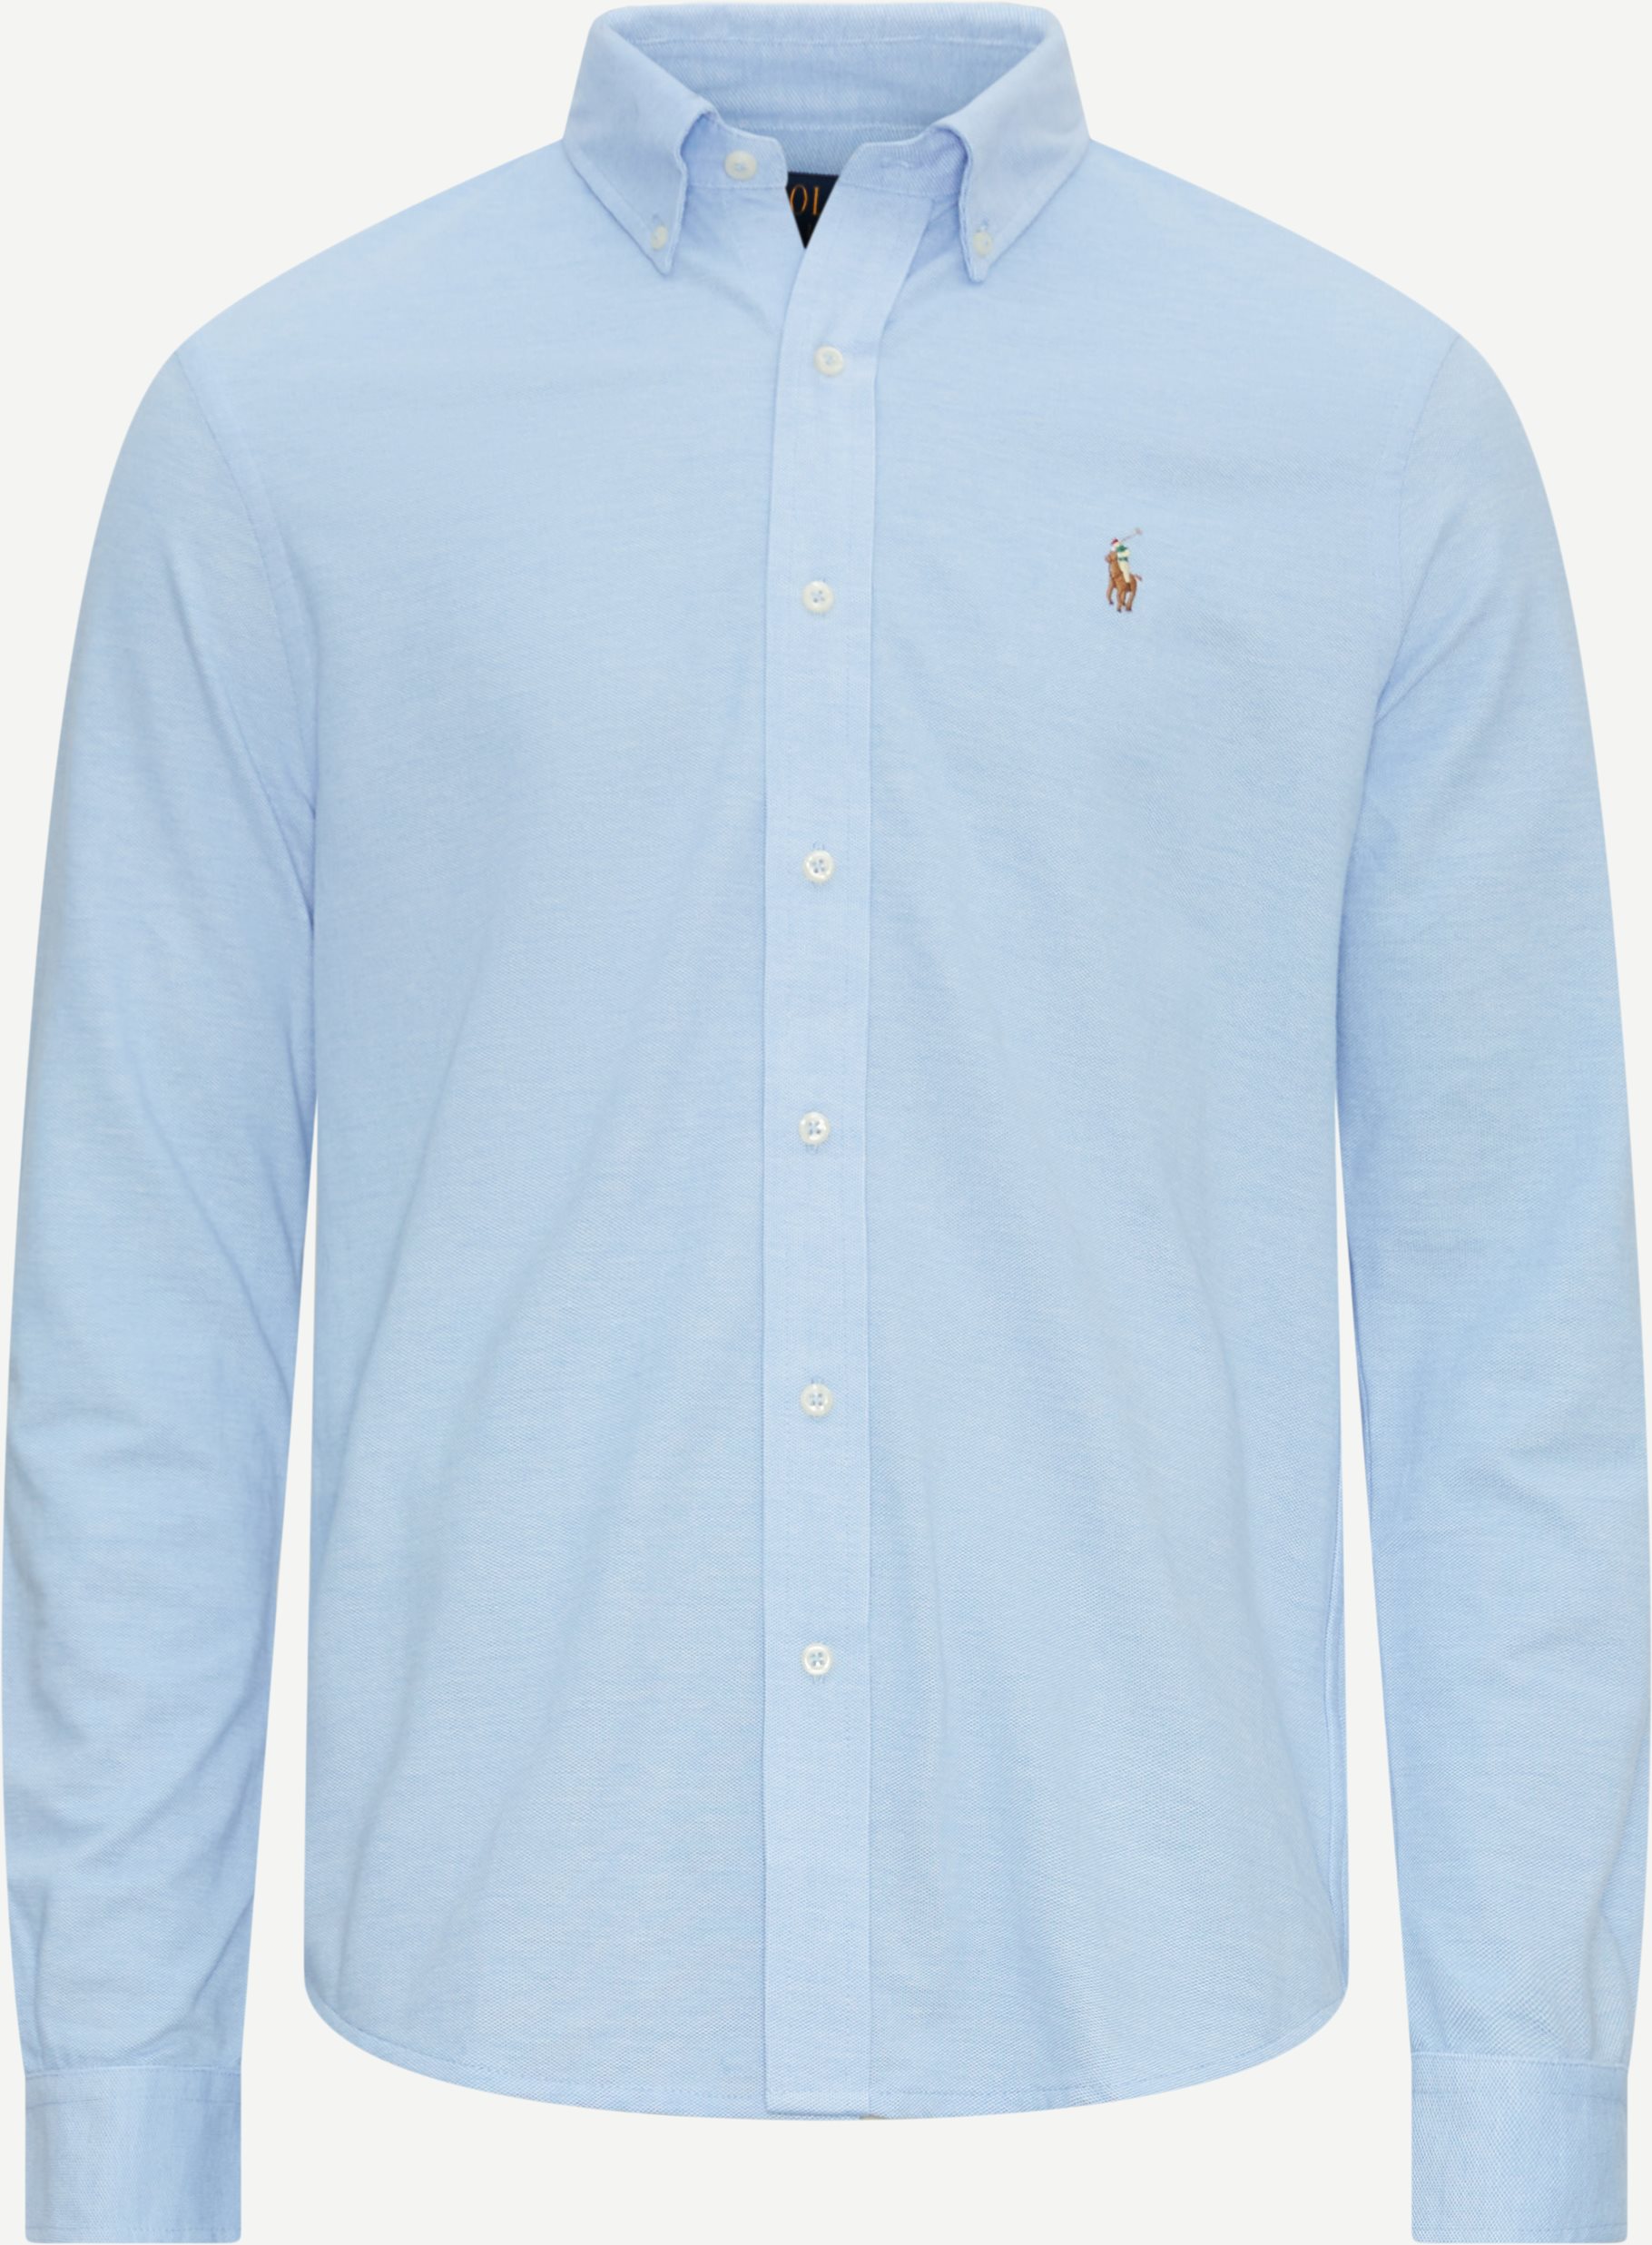 Polo Ralph Lauren Skjorter 710932545 Blå